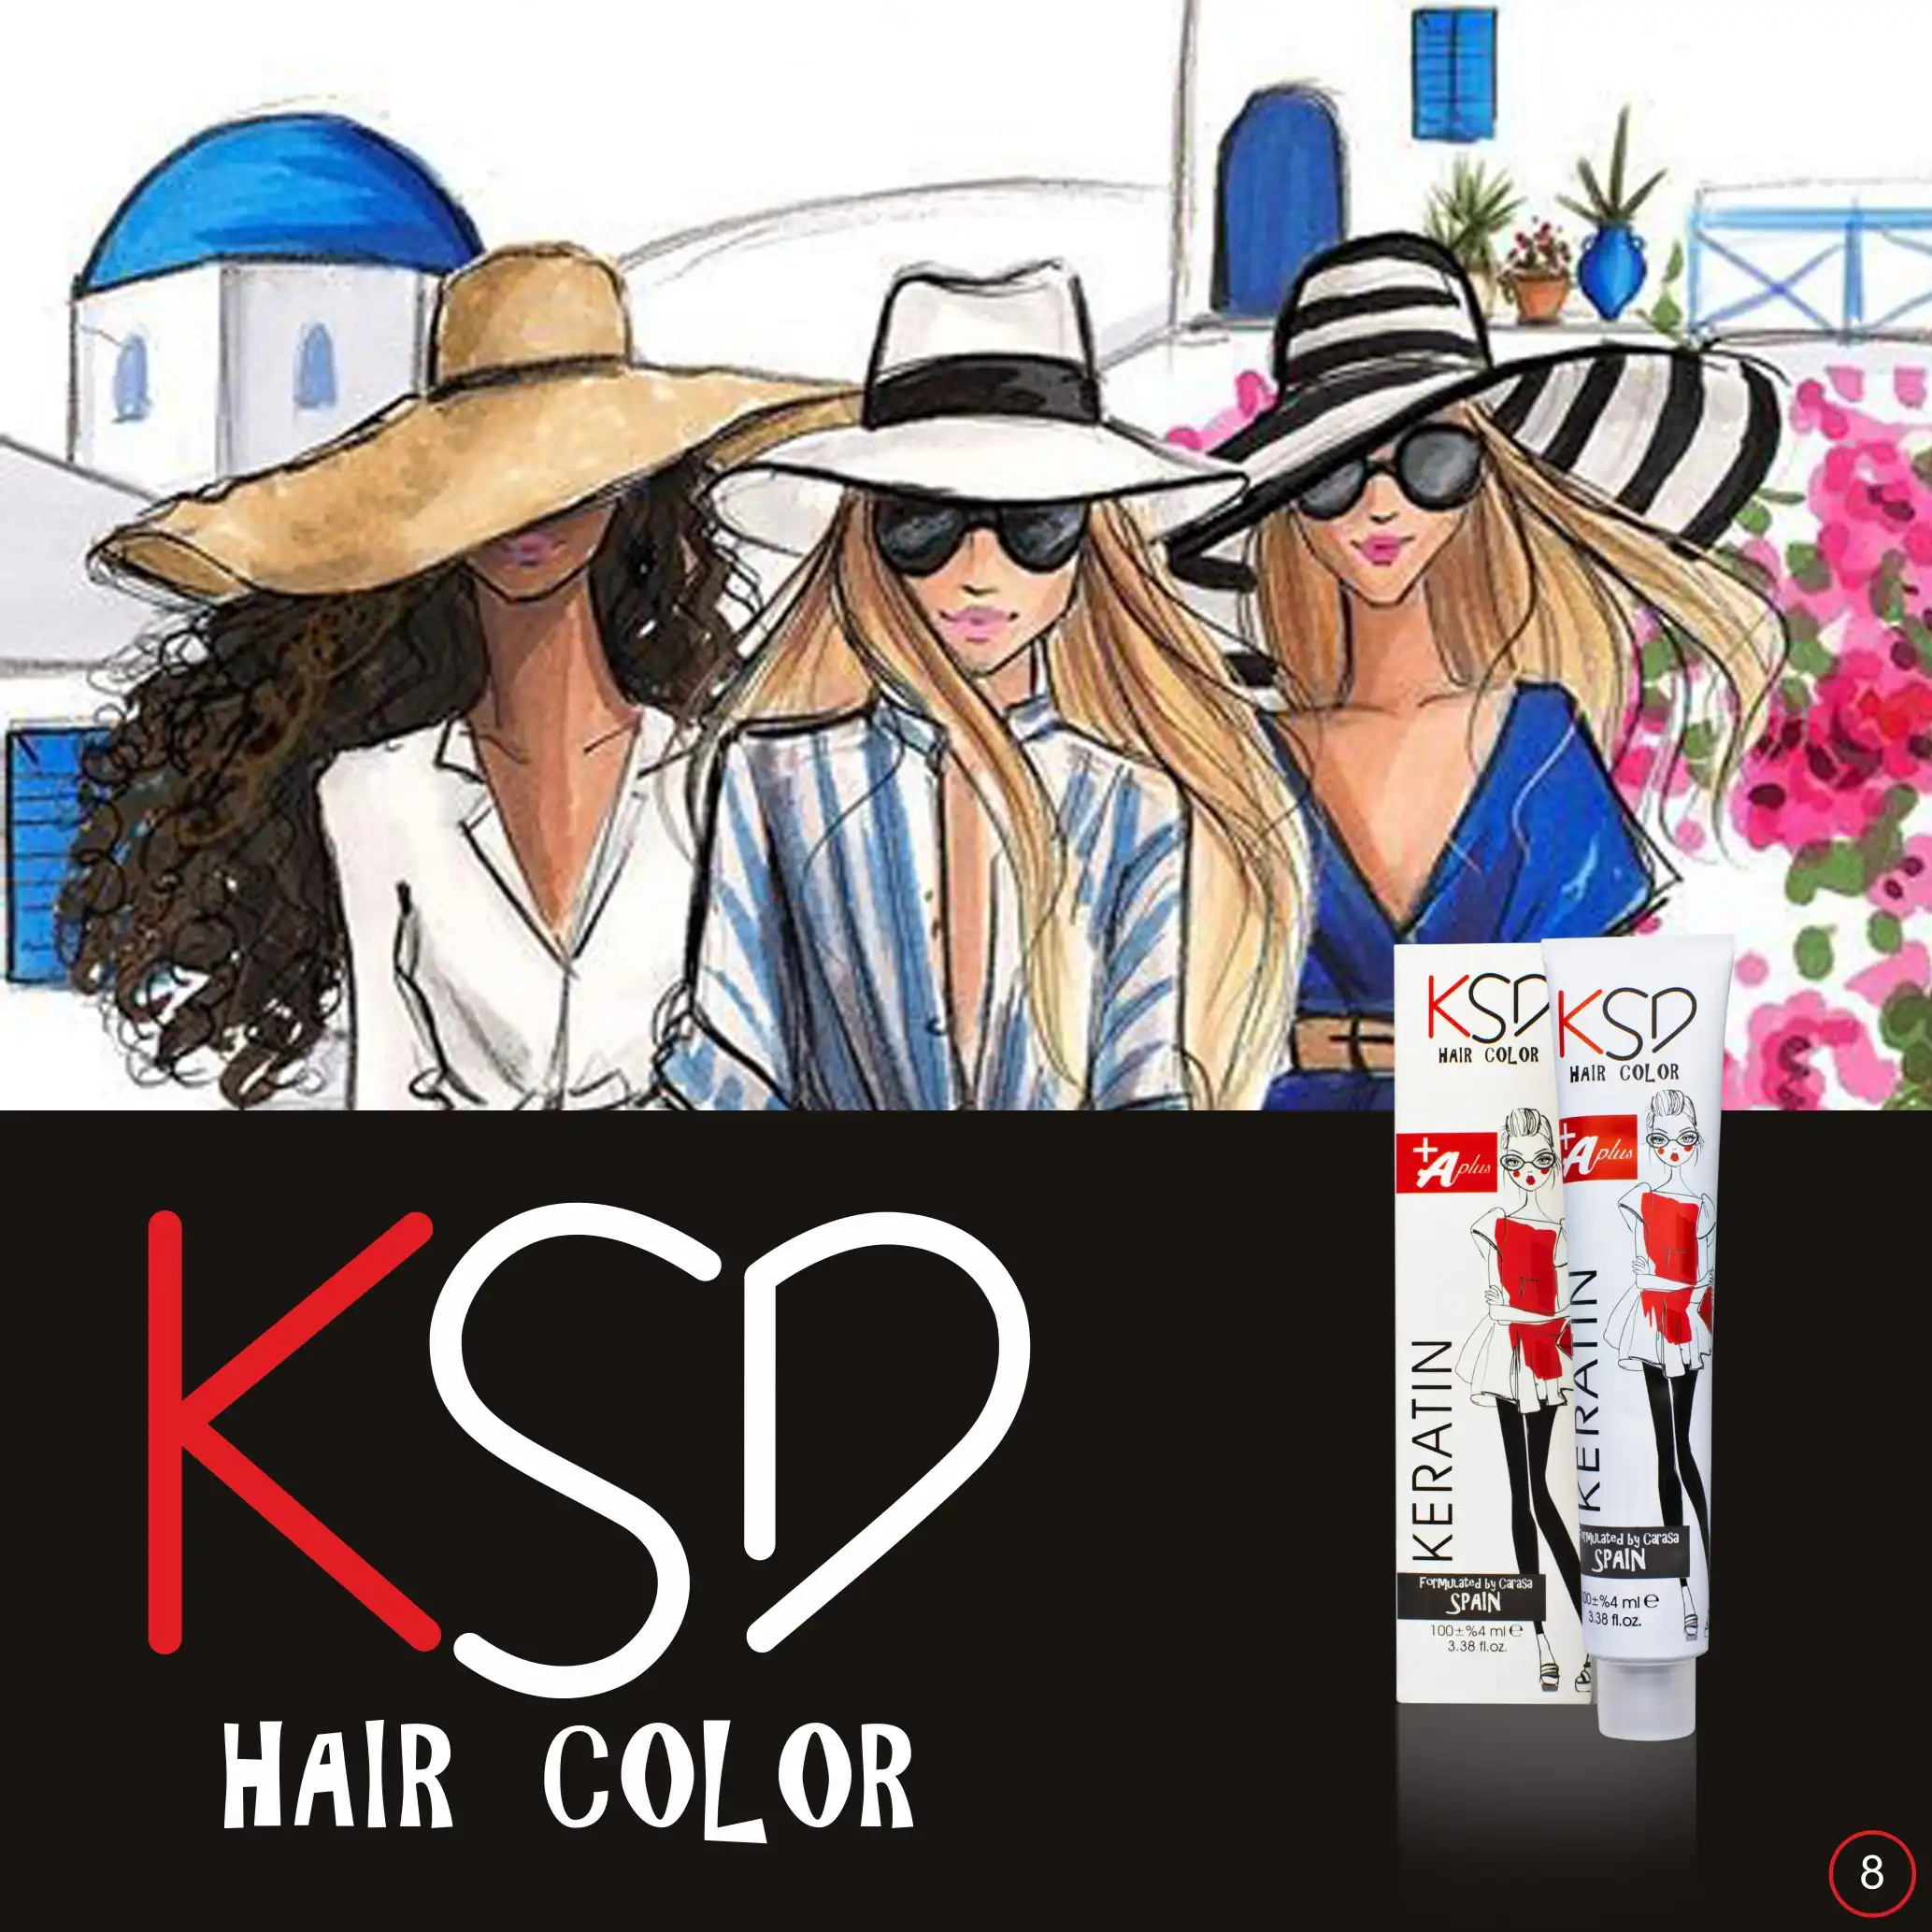 کاتالوگ رنگ موی کی اس دی | KSD